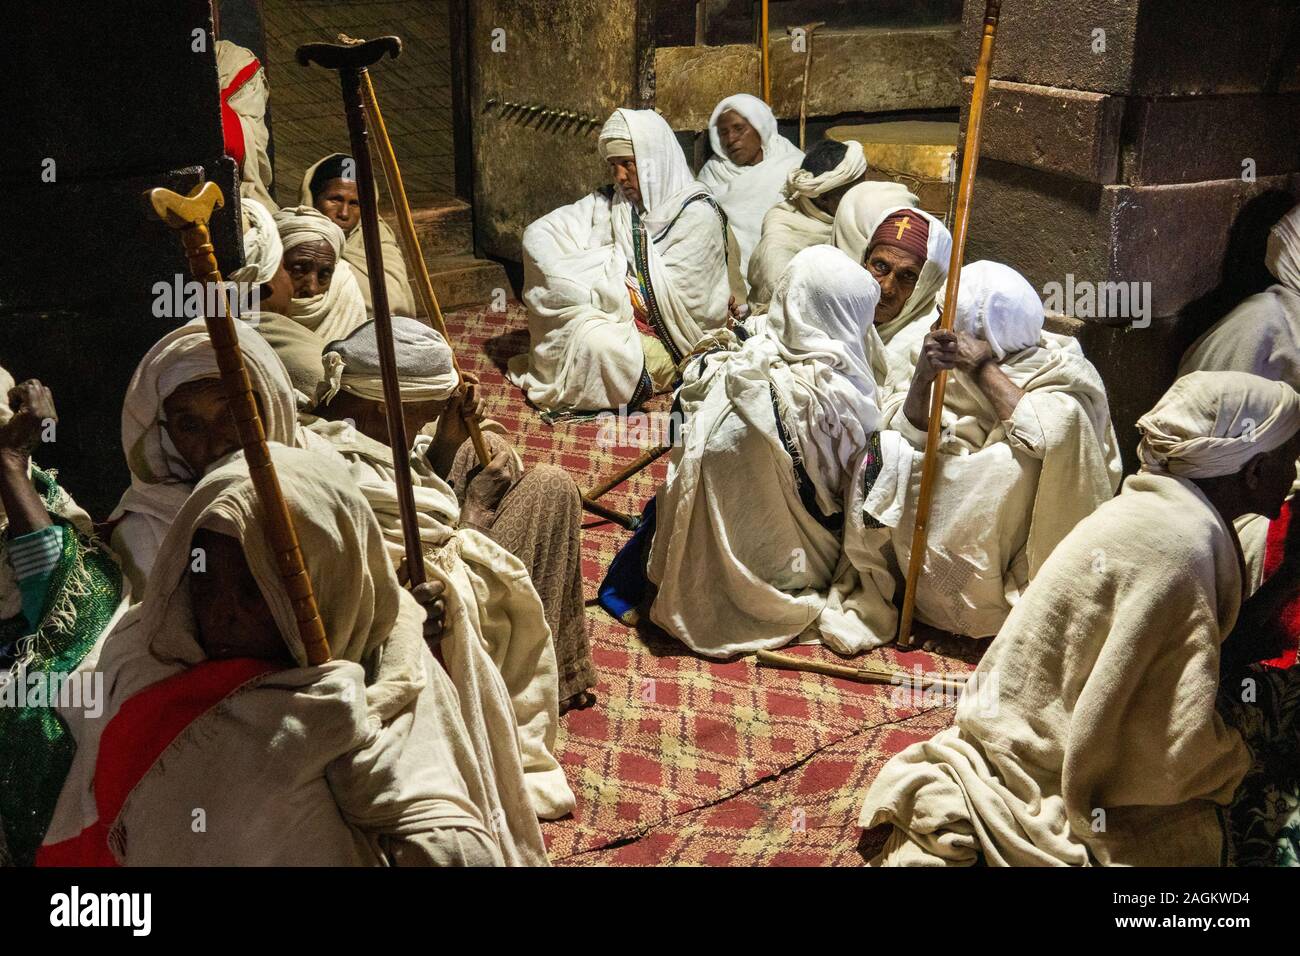 Äthiopien, Amhara-region, Yemrehanna Kristos Lalibela, Kloster, Fest der Erzengel Gabriel, weibliche Pilger saß im Inneren Höhle Kirche Stockfoto